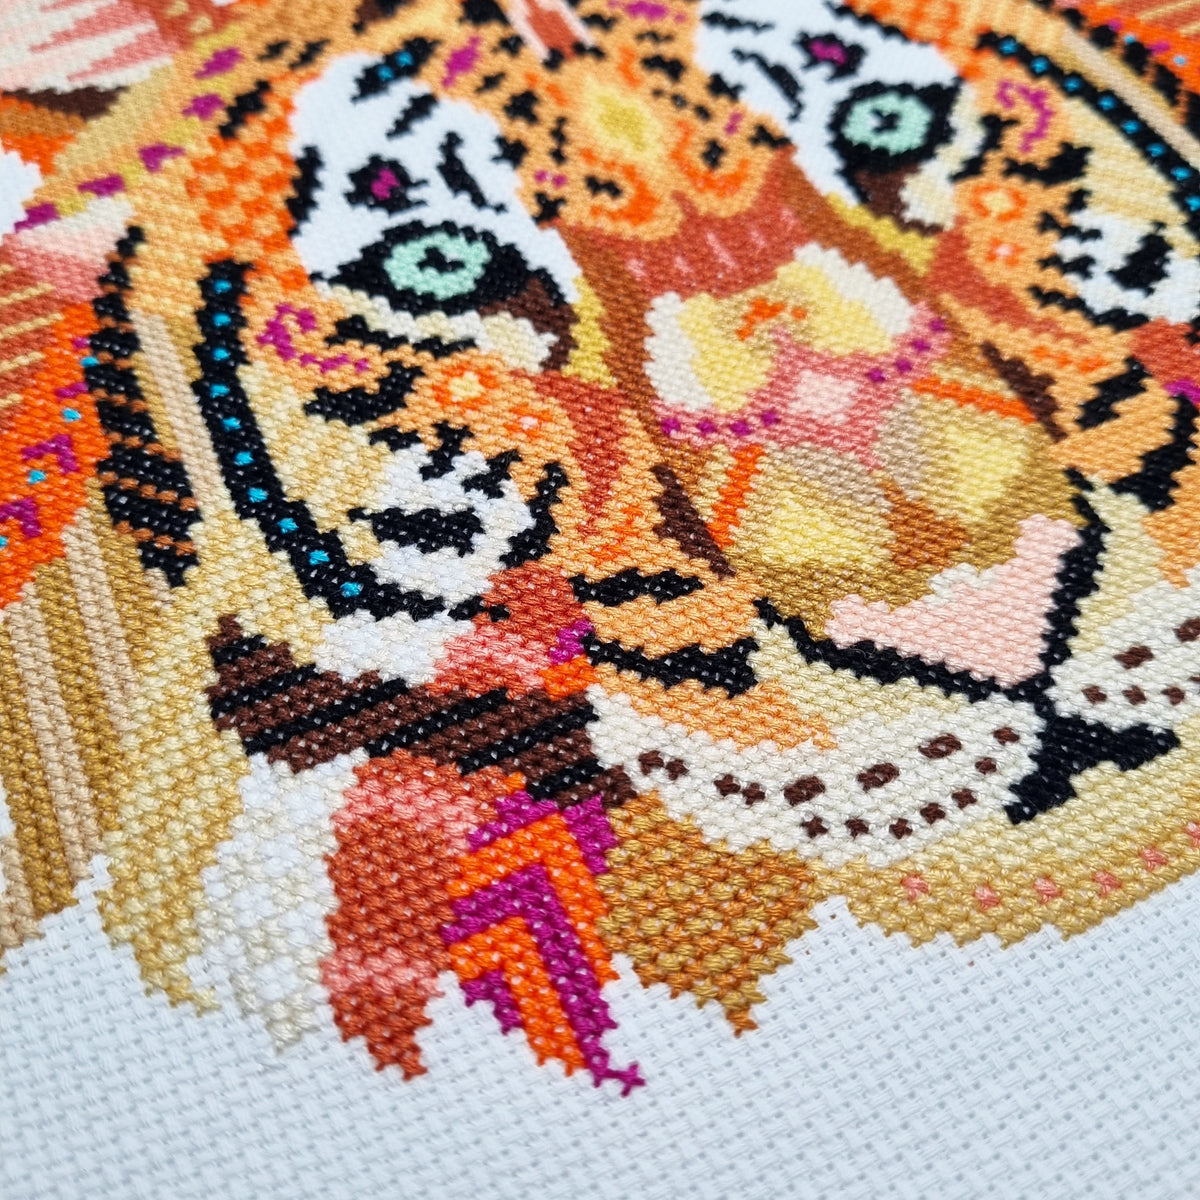 Mandala Tiger Cross Stitch Pattern